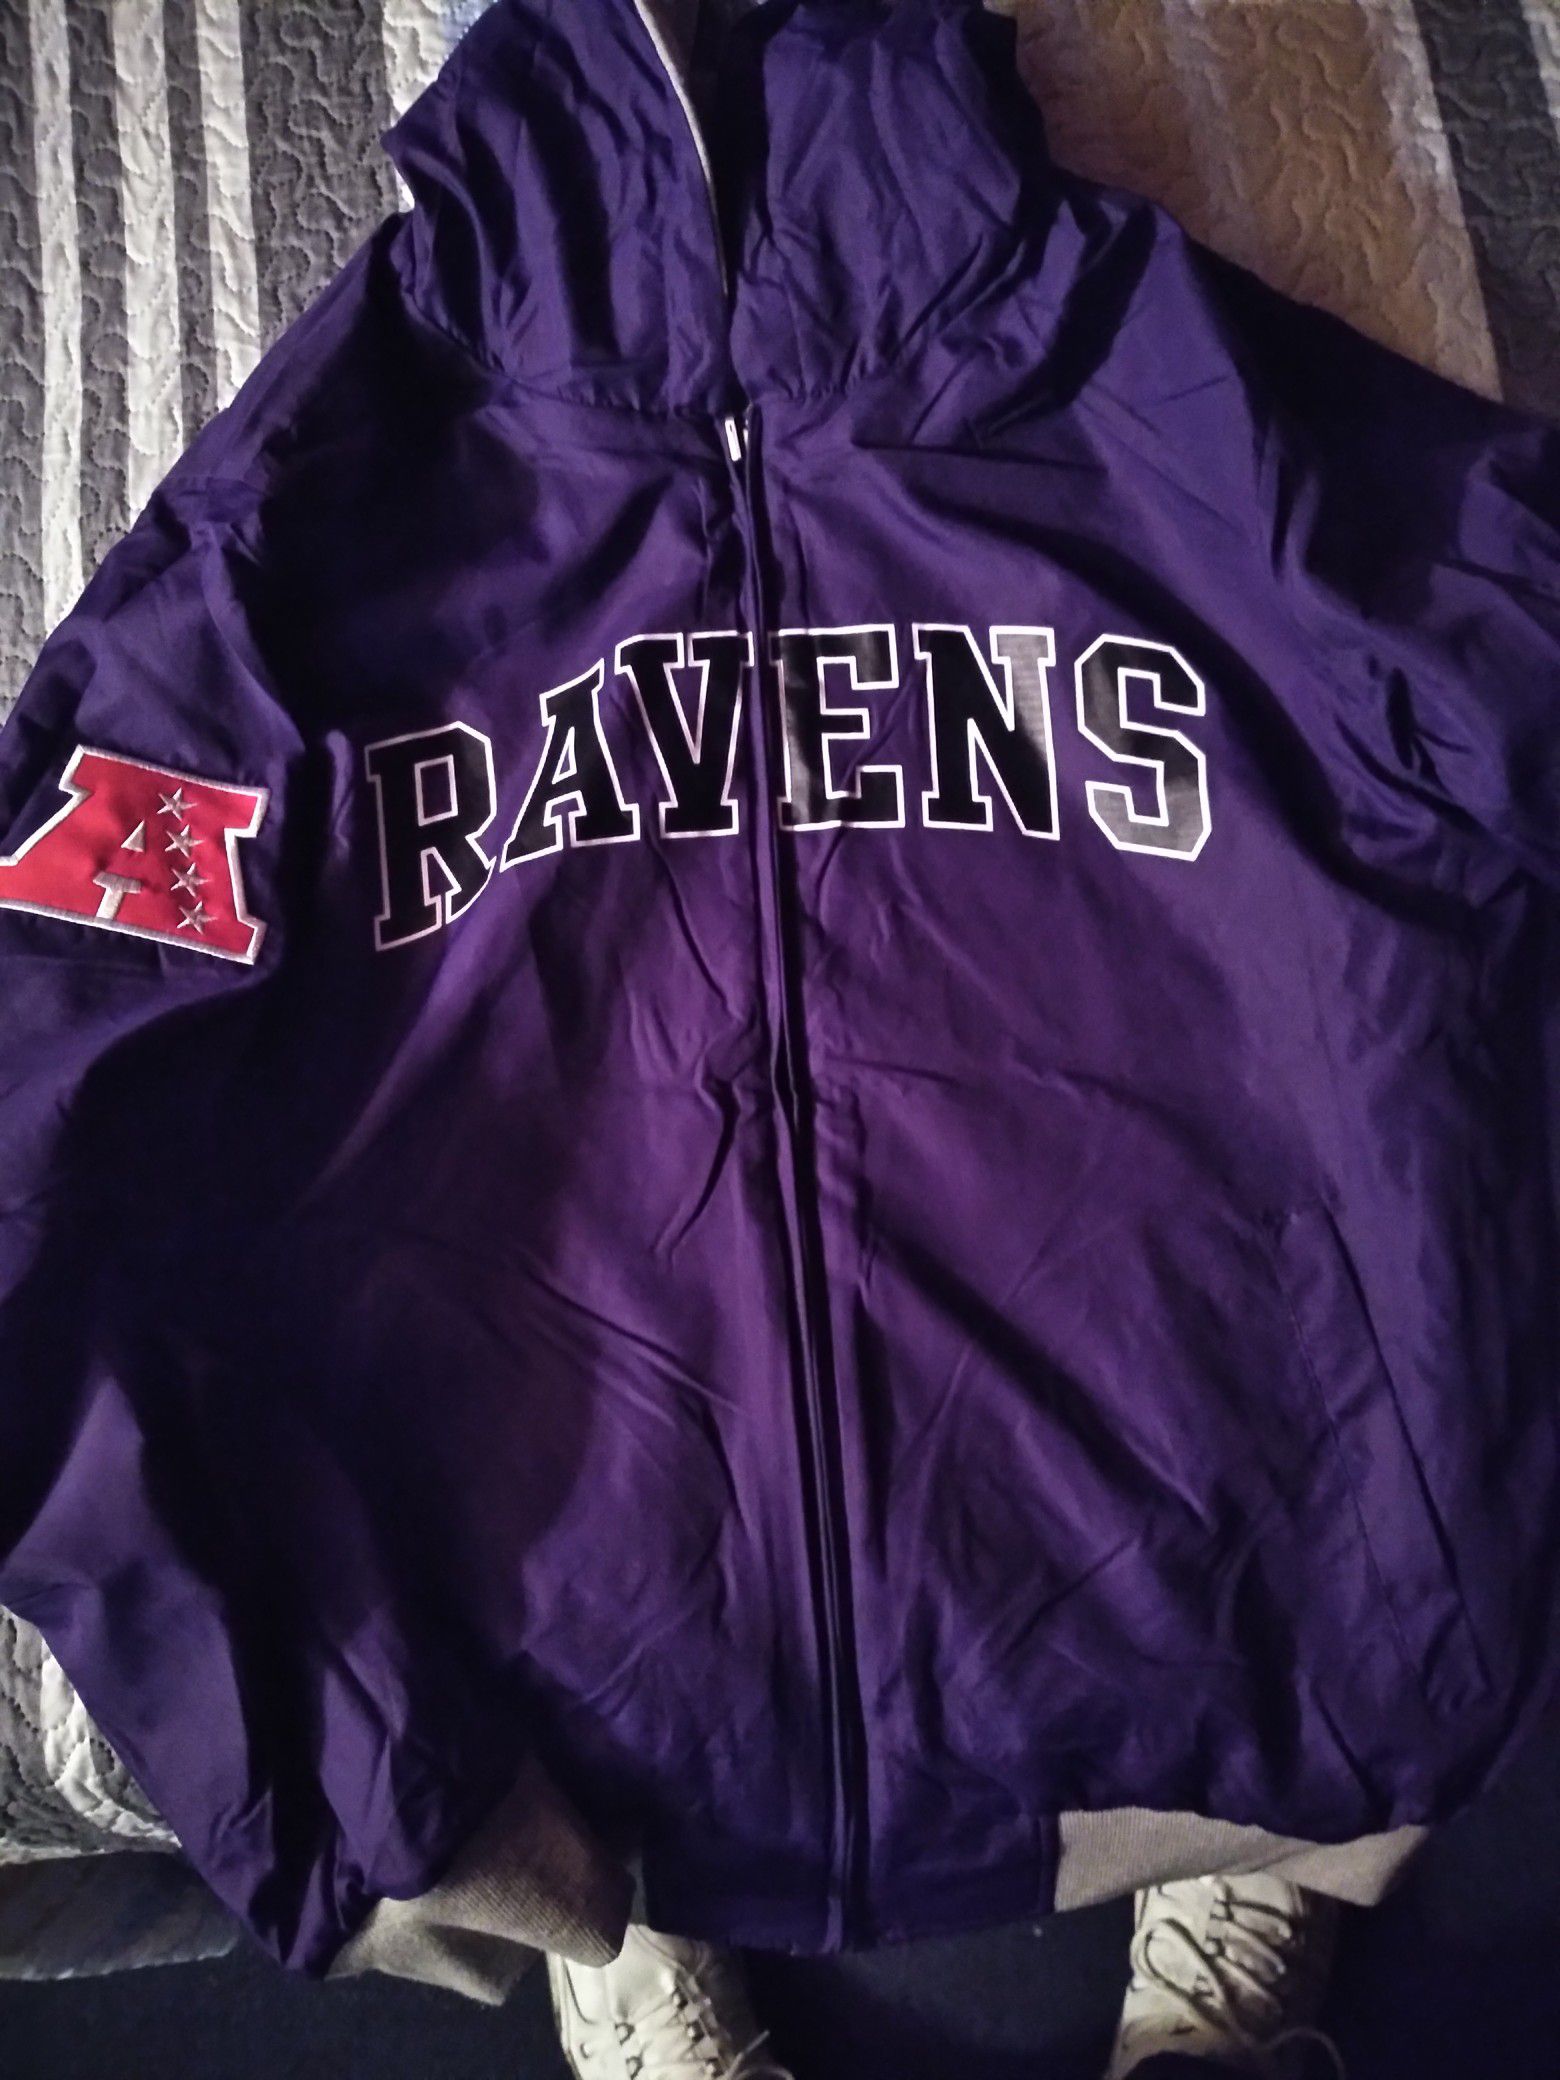 Ravens vest and jacket